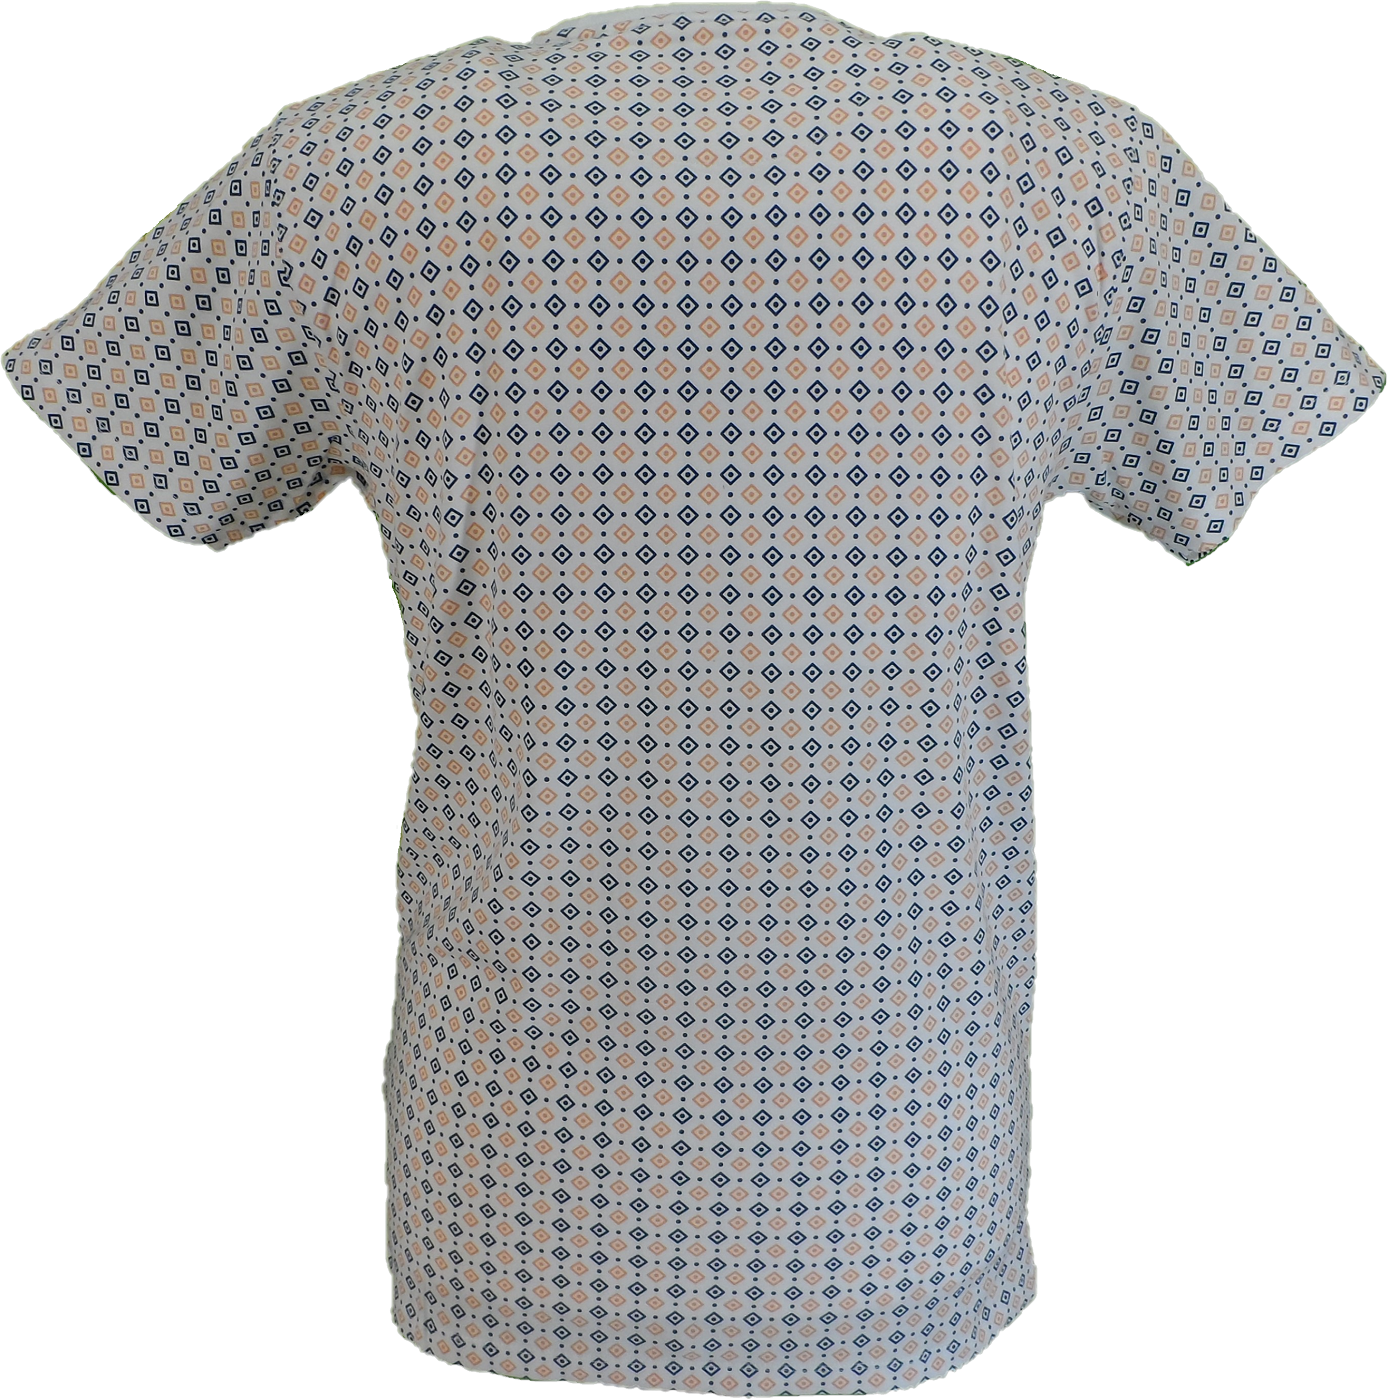 Weißes Herren-T-Shirt mit durchgehendem geometrischem Print Lambretta